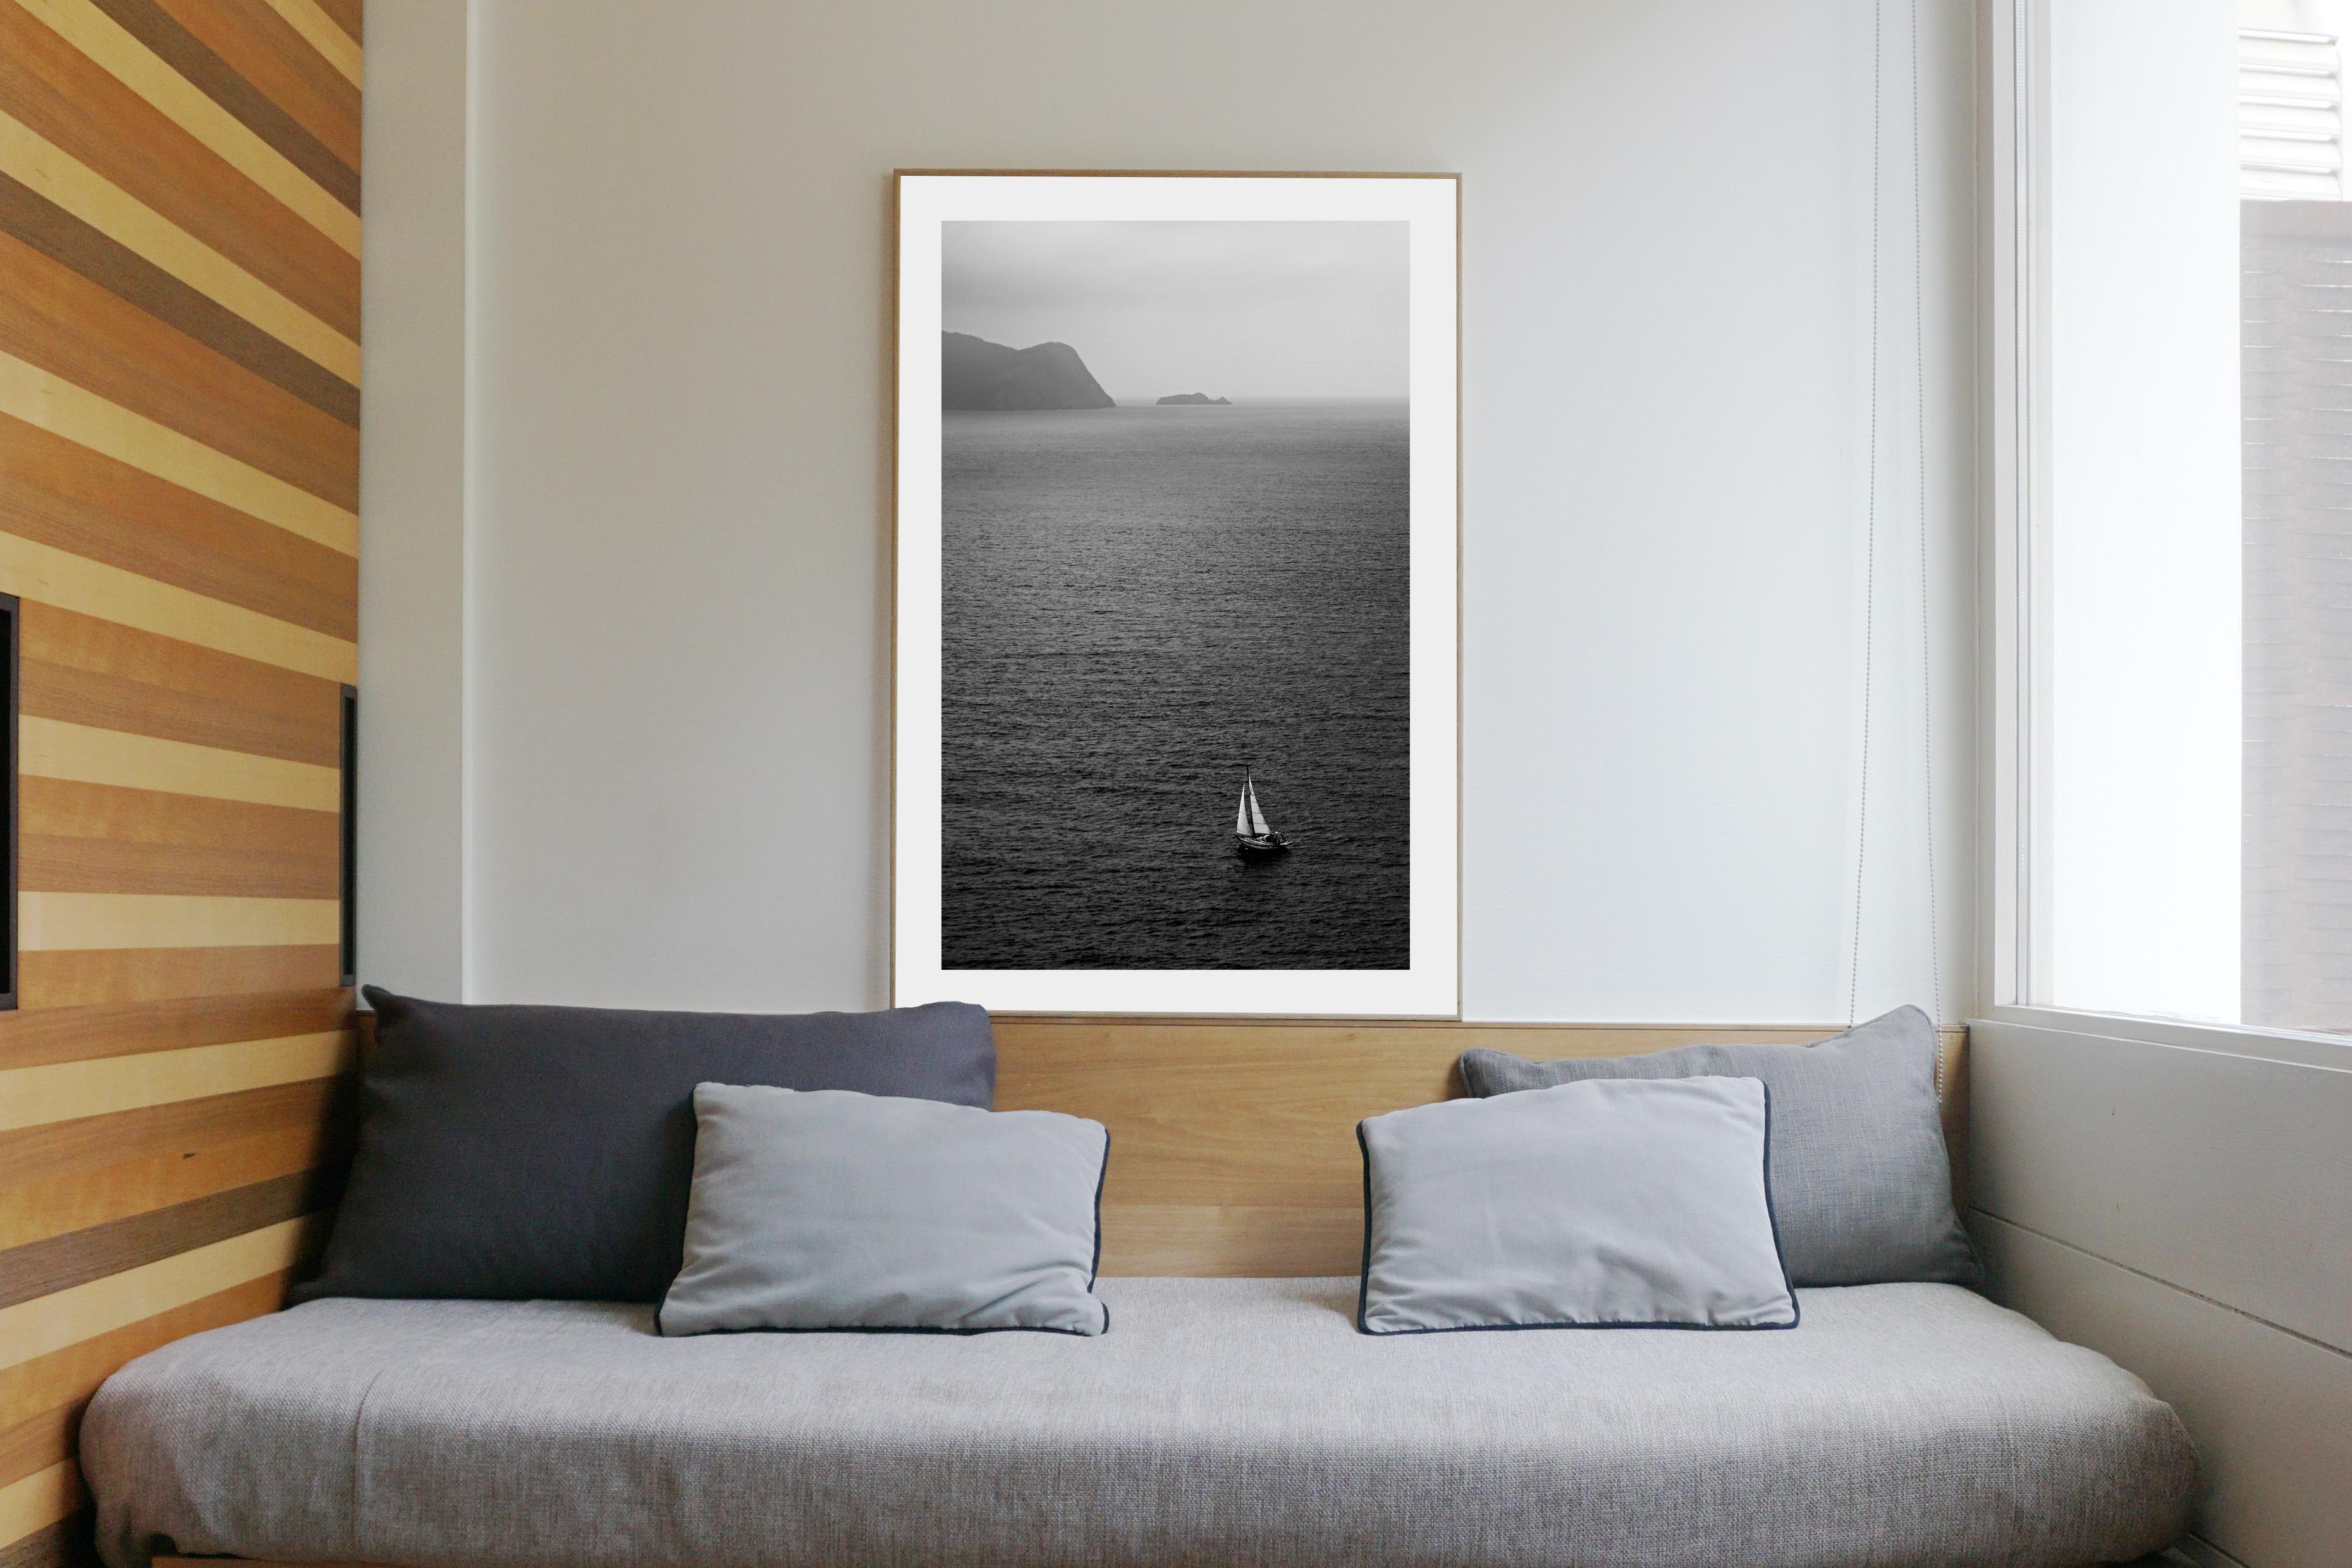  Misty Segelboot-Reise, Regatta- Meereslandschaft, Mittelmeerküste in Schwarz und Weiß (Realismus), Photograph, von Kind of Cyan